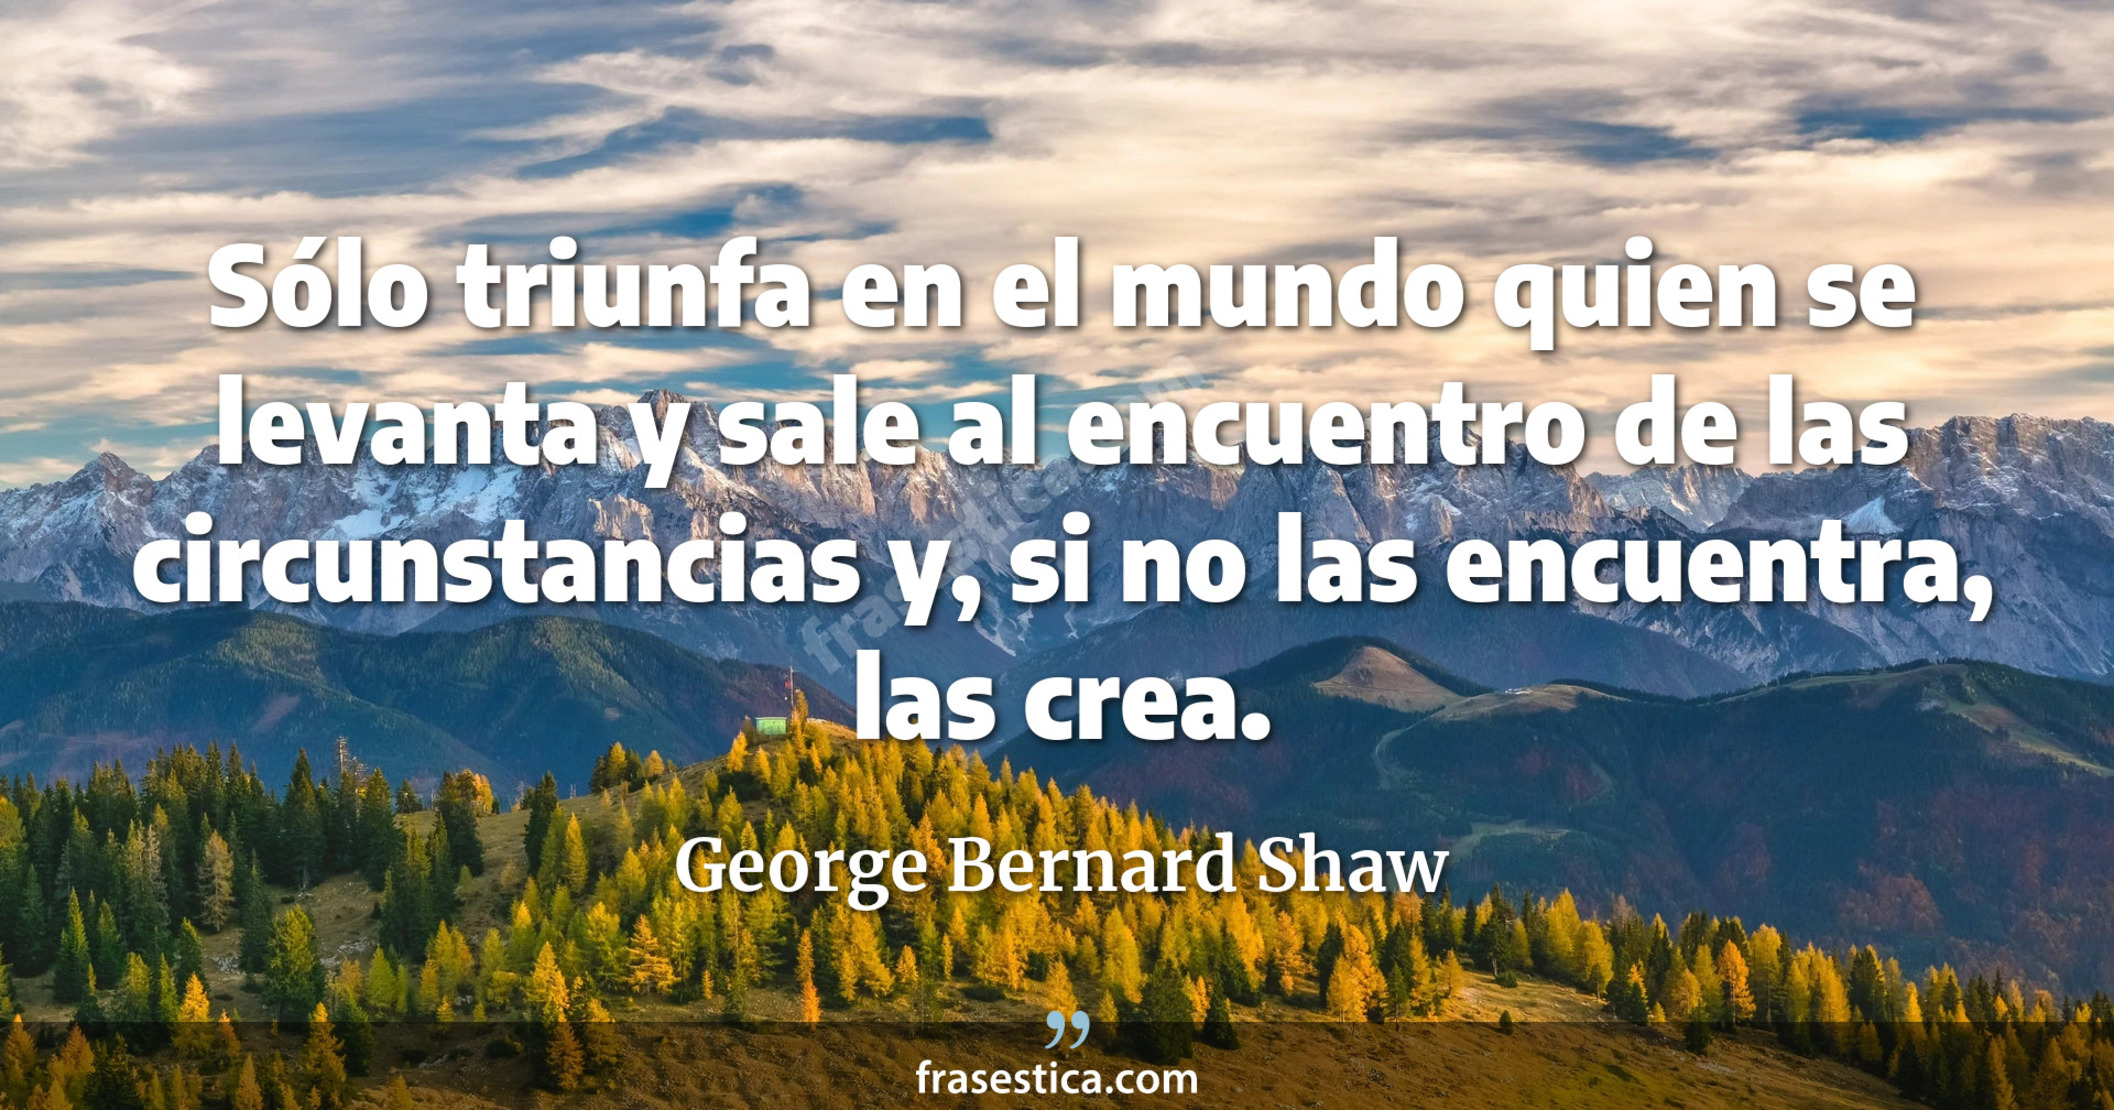 Sólo triunfa en el mundo quien se levanta y sale al encuentro de las circunstancias y, si no las encuentra, las crea. - George Bernard Shaw